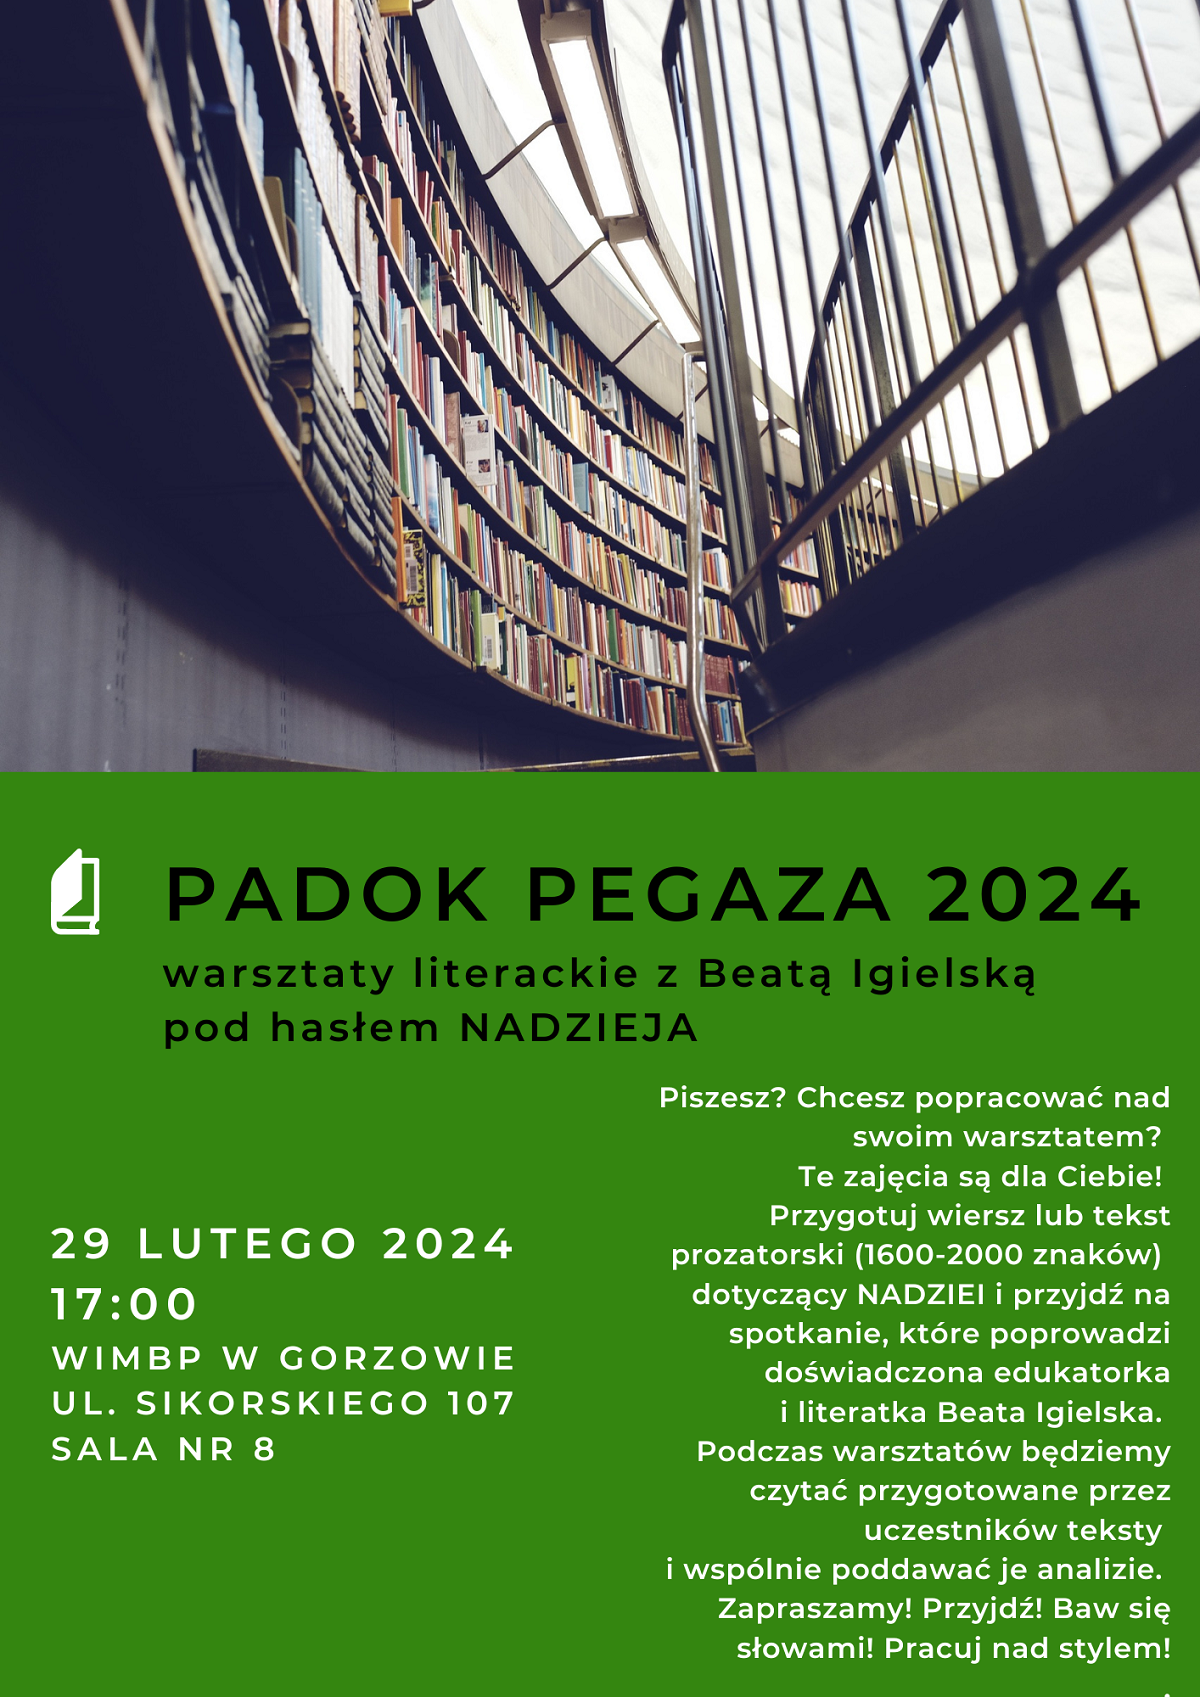 Plakat promujący wydarzenie w kolorze zielonym i grafiką z książkami.